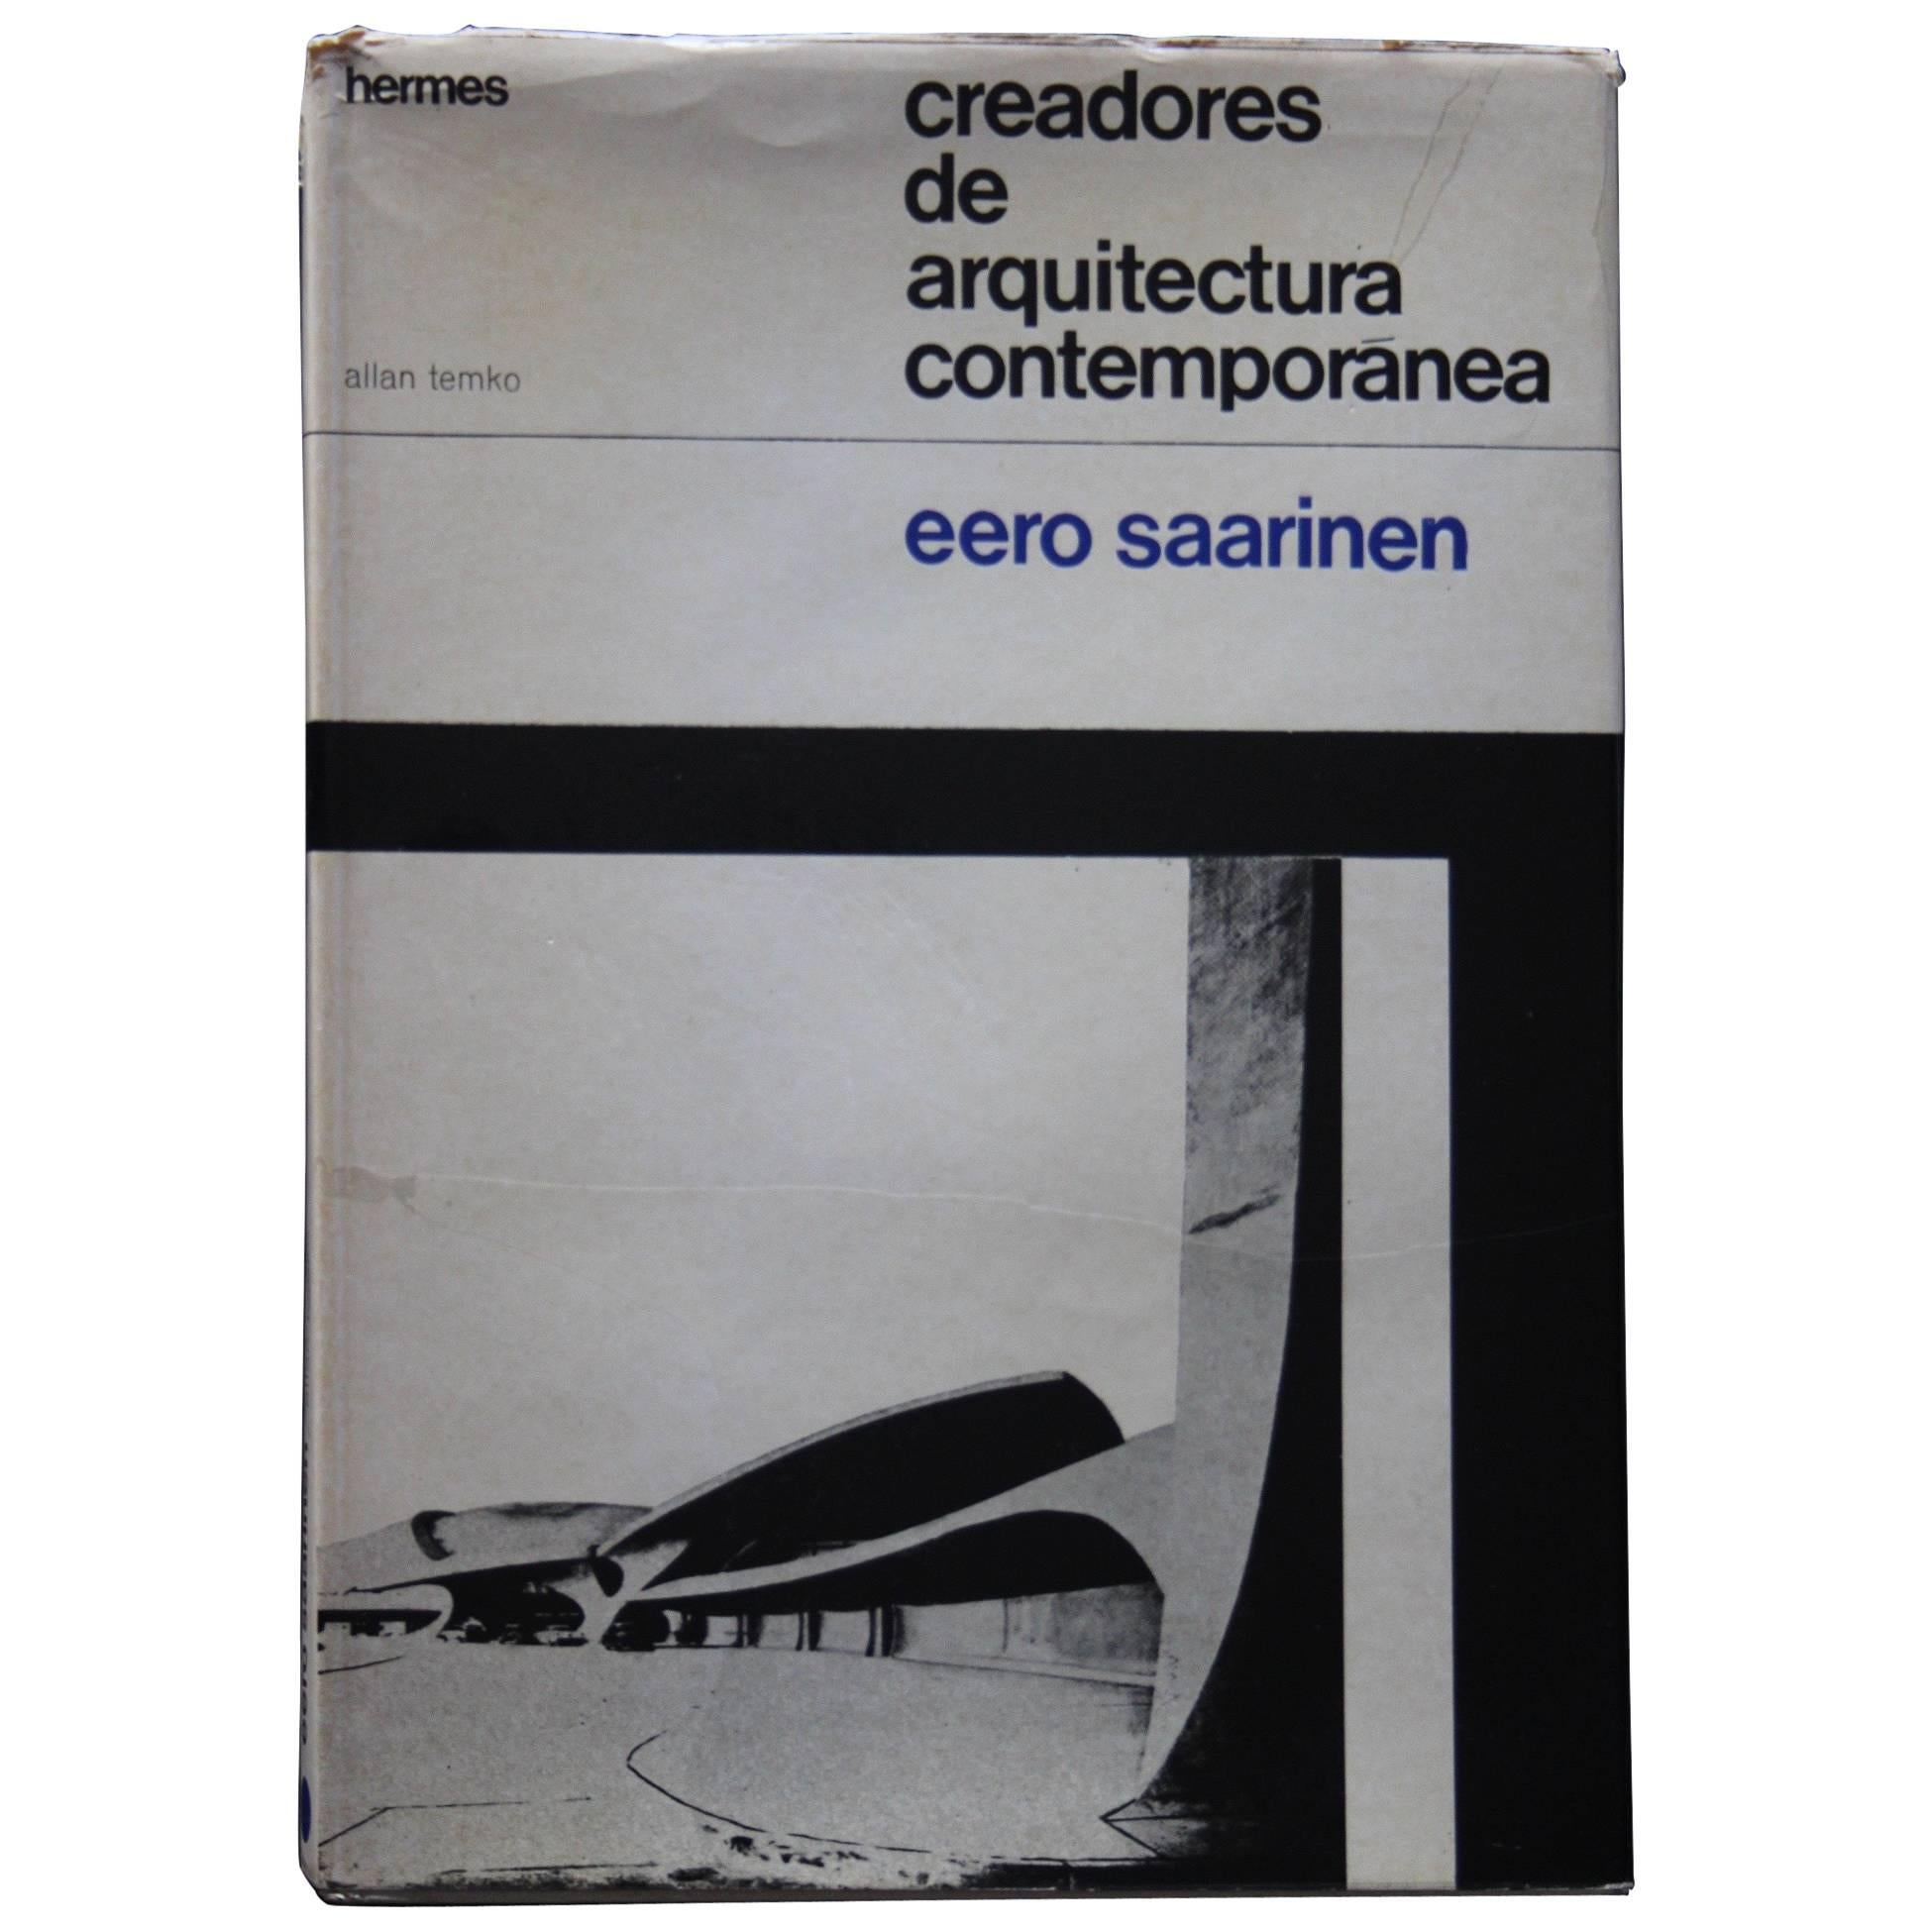 "Eero Saarinen creadores de arquitectura contemporánea" Book